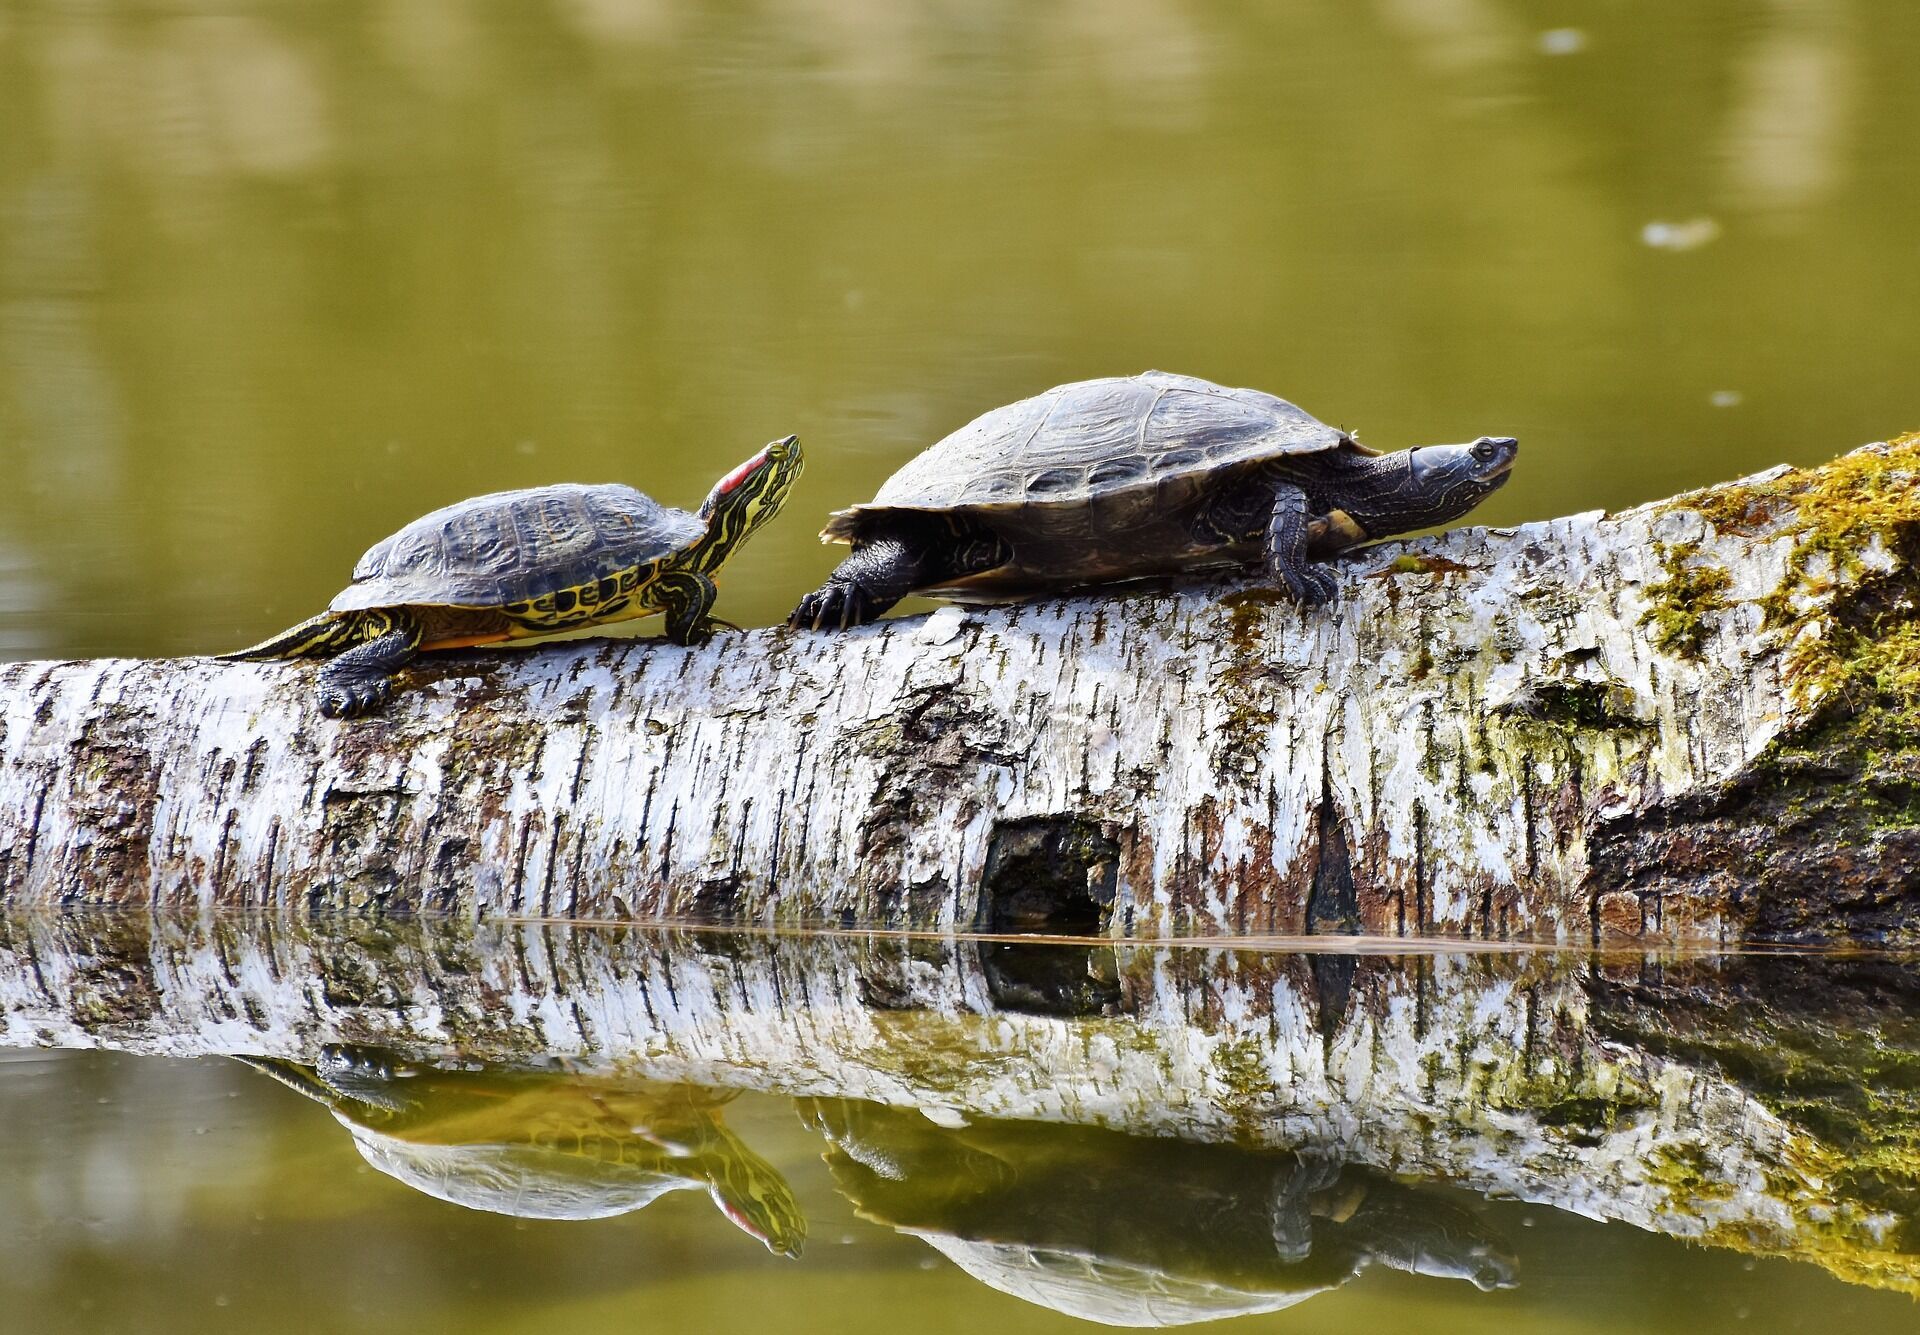 23 мая во многих странах отмечается Всемирный день черепахи